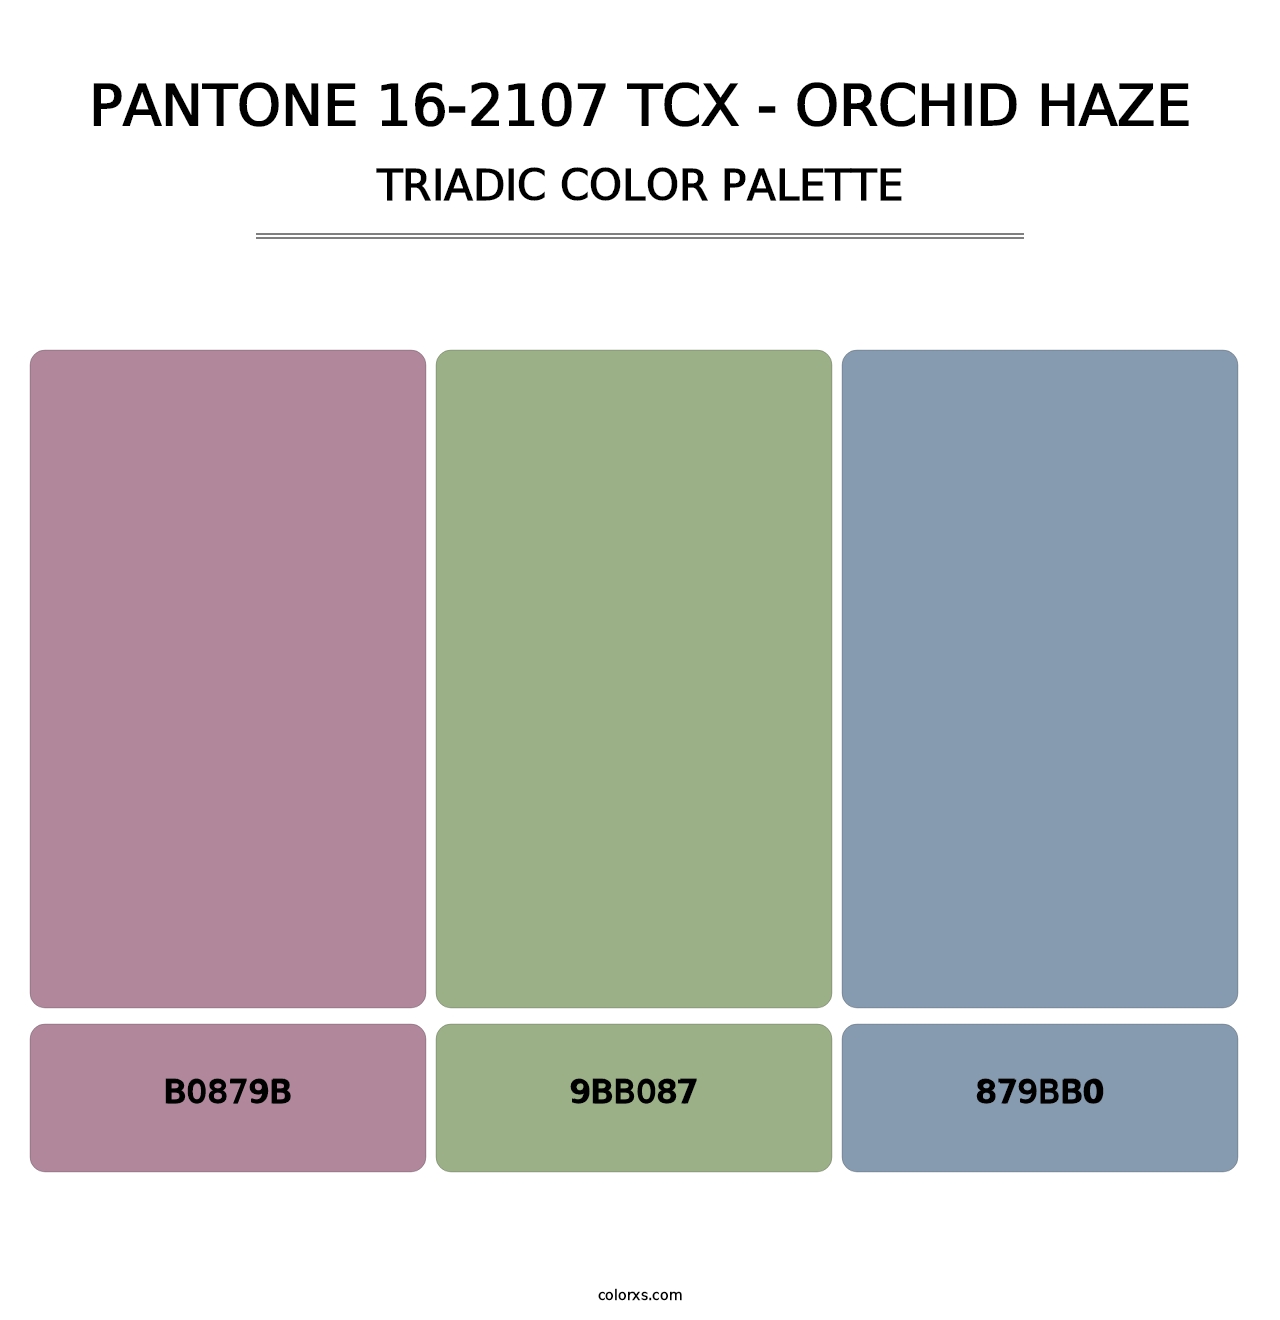 PANTONE 16-2107 TCX - Orchid Haze - Triadic Color Palette